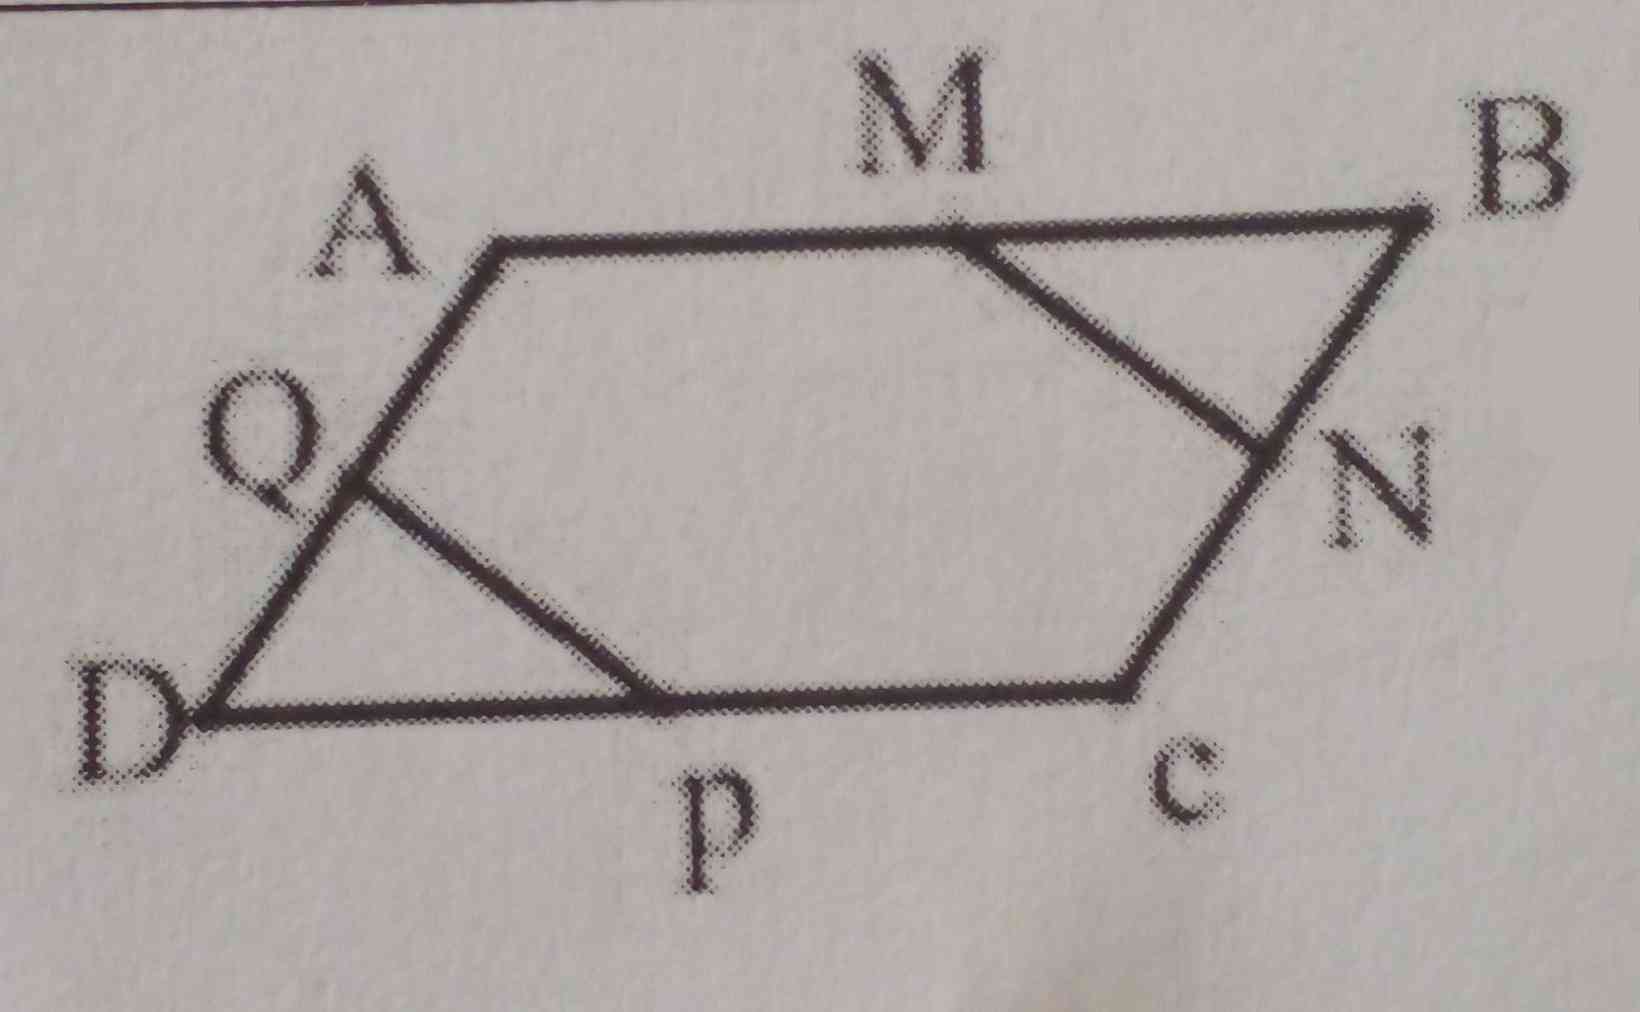 در شکل مقابل ABCDمتوازی الاضلاع است.   M,N,P,Q وسط های اضلاع متوازی الاضلاع اند.
همنهشتی دو مثلث MBN و QDP را ثابت کنید.